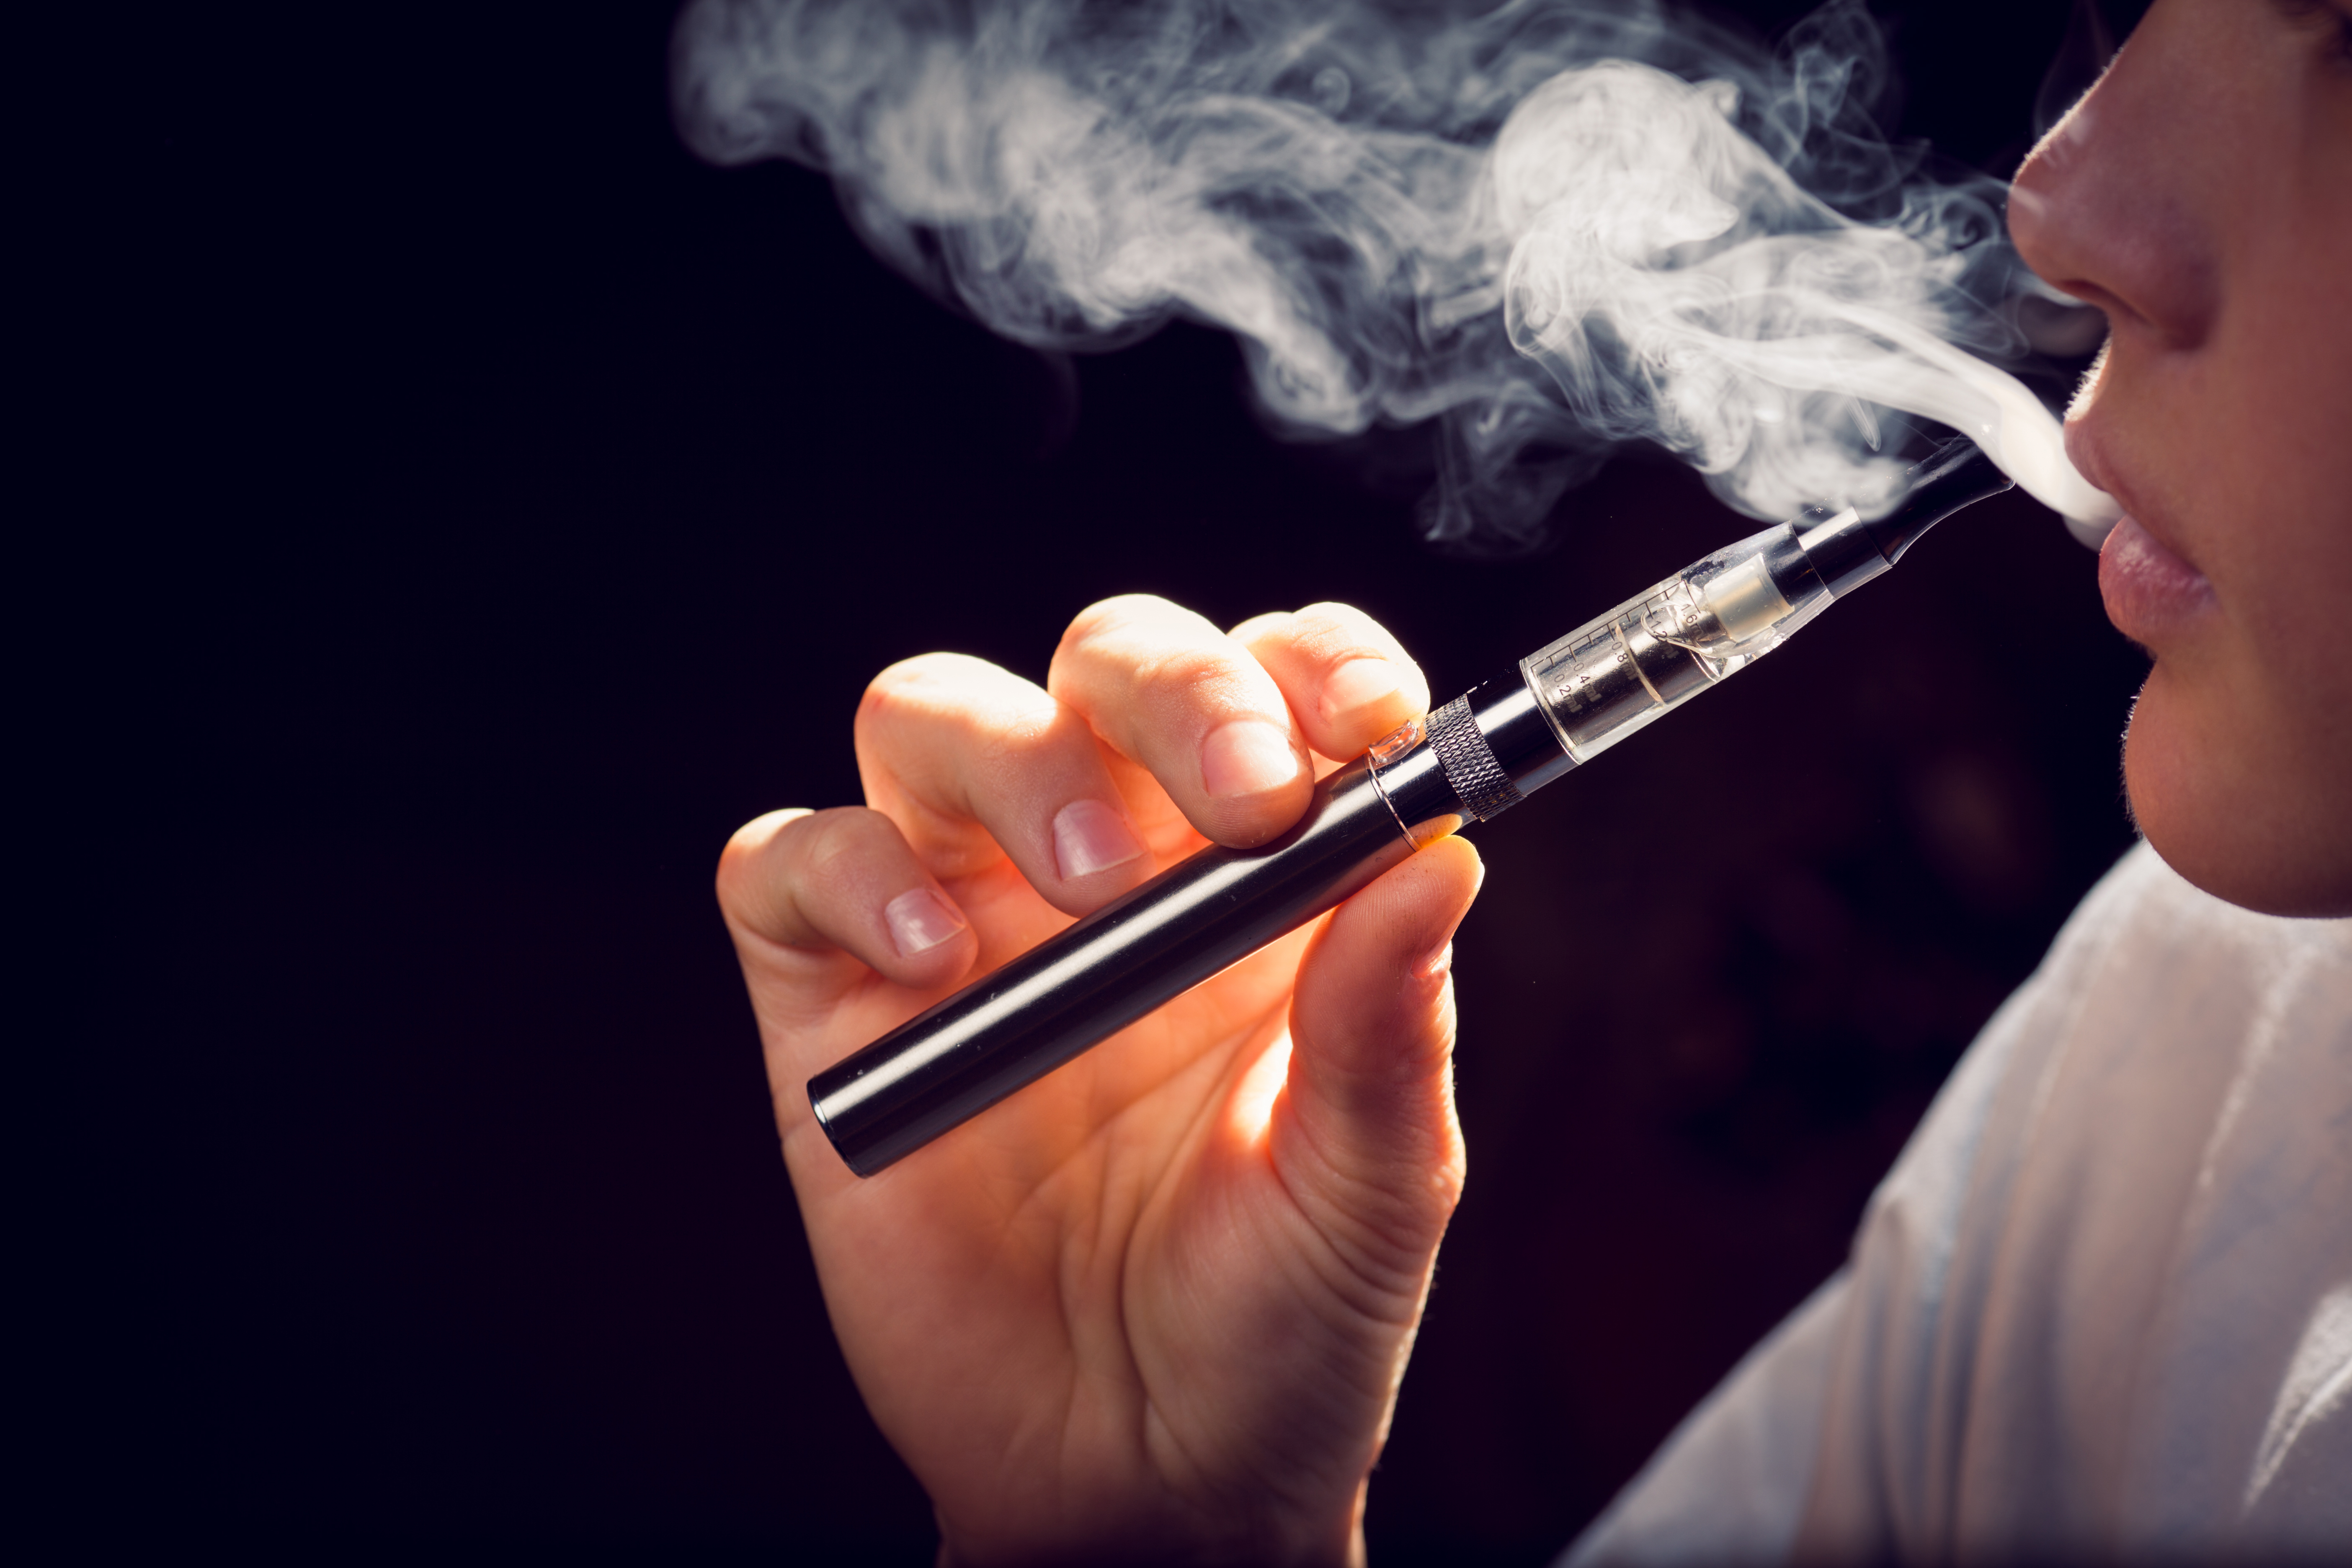 Legea care interzice vanzarea de ţigari electronice catre minori a fost adoptata